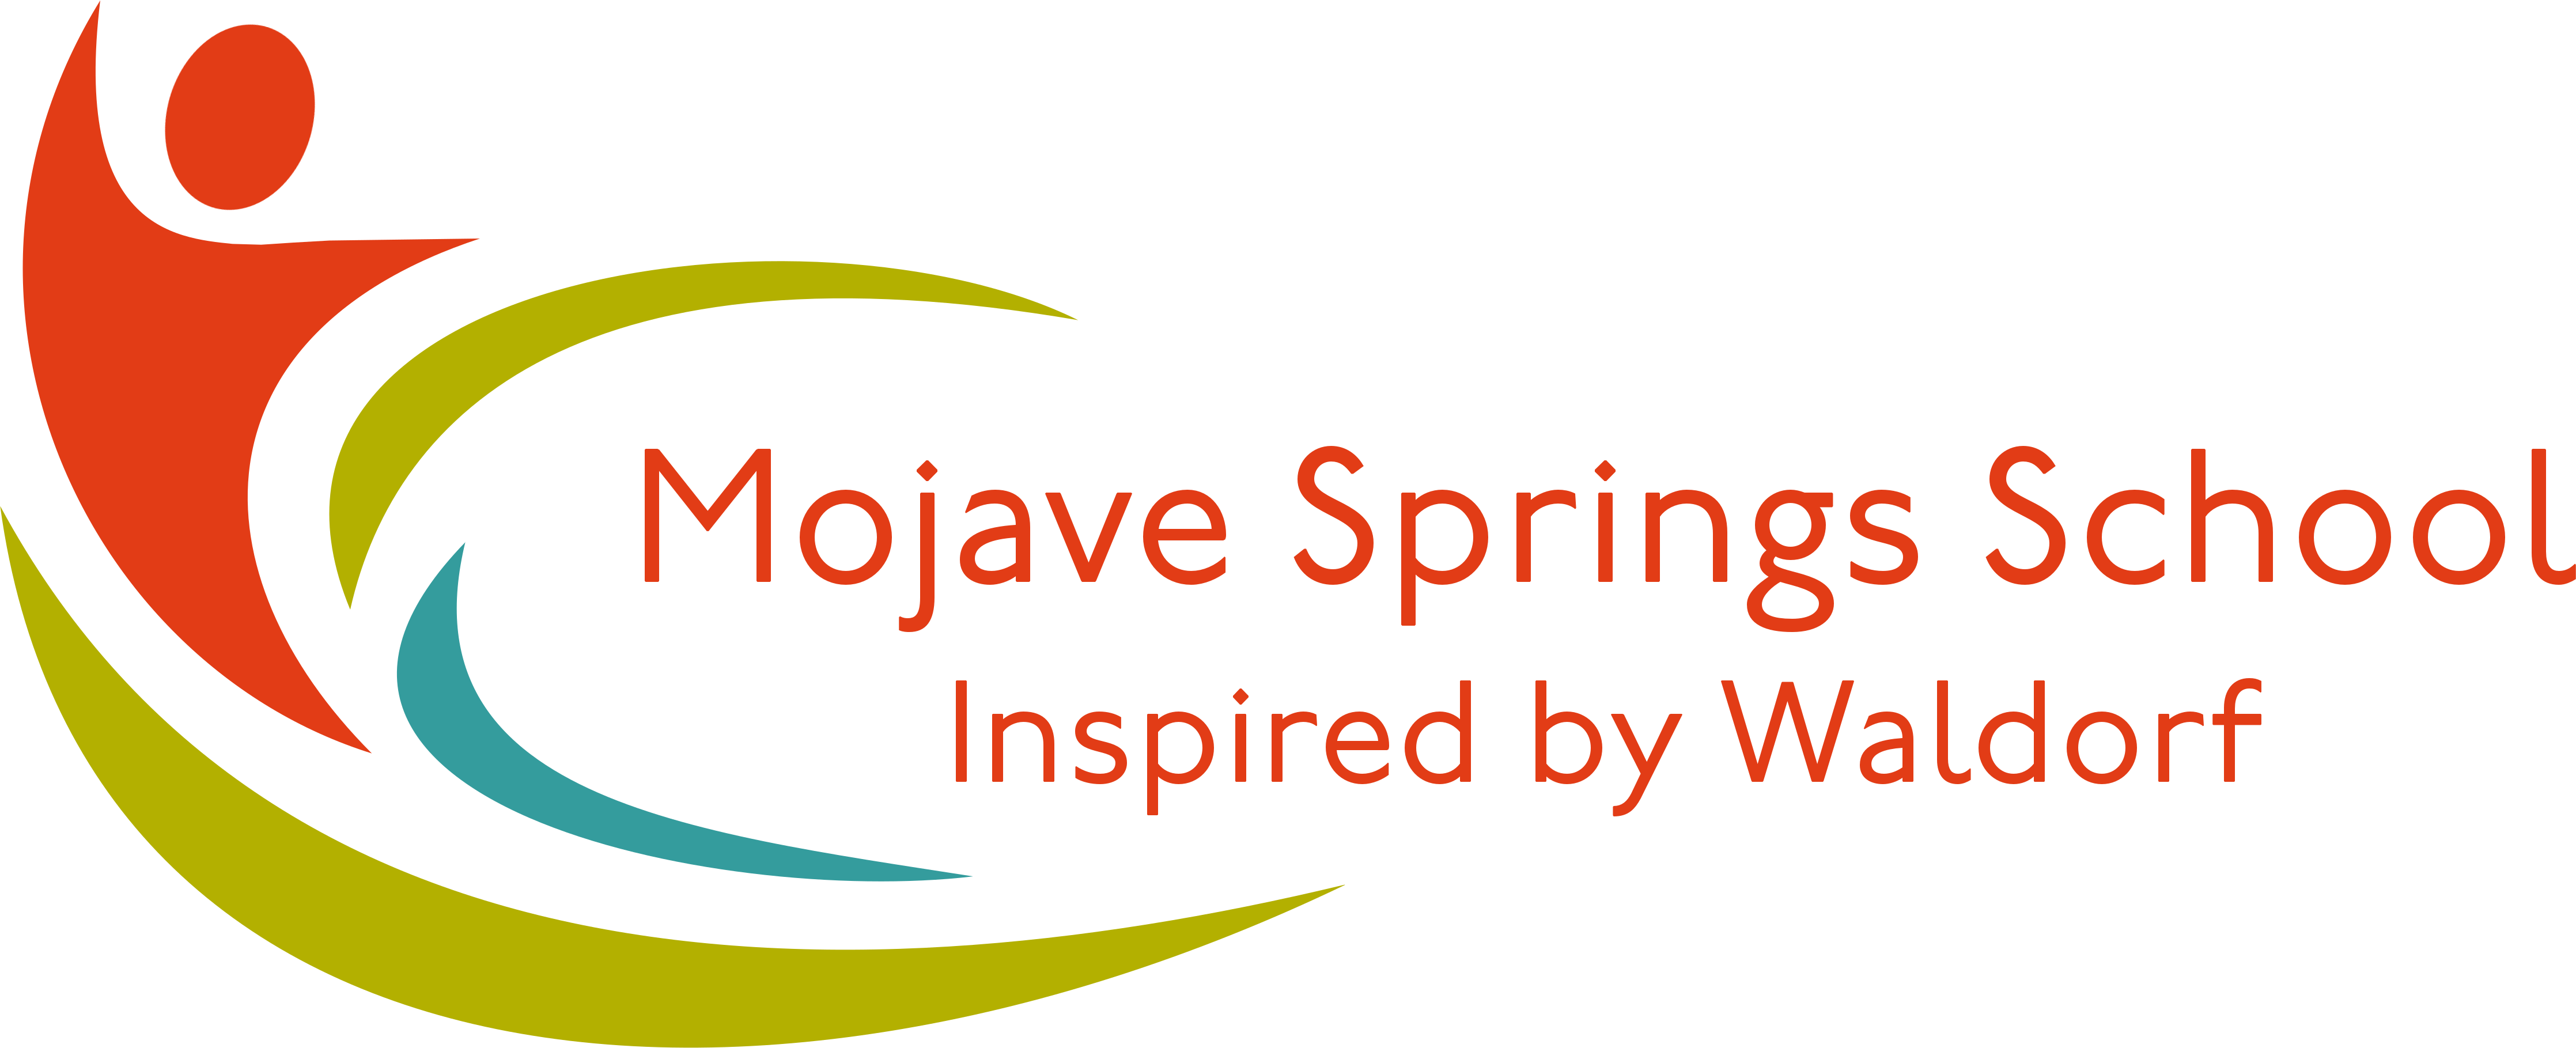 Mojave Springs School - Calendar (4471x1819), Png Download